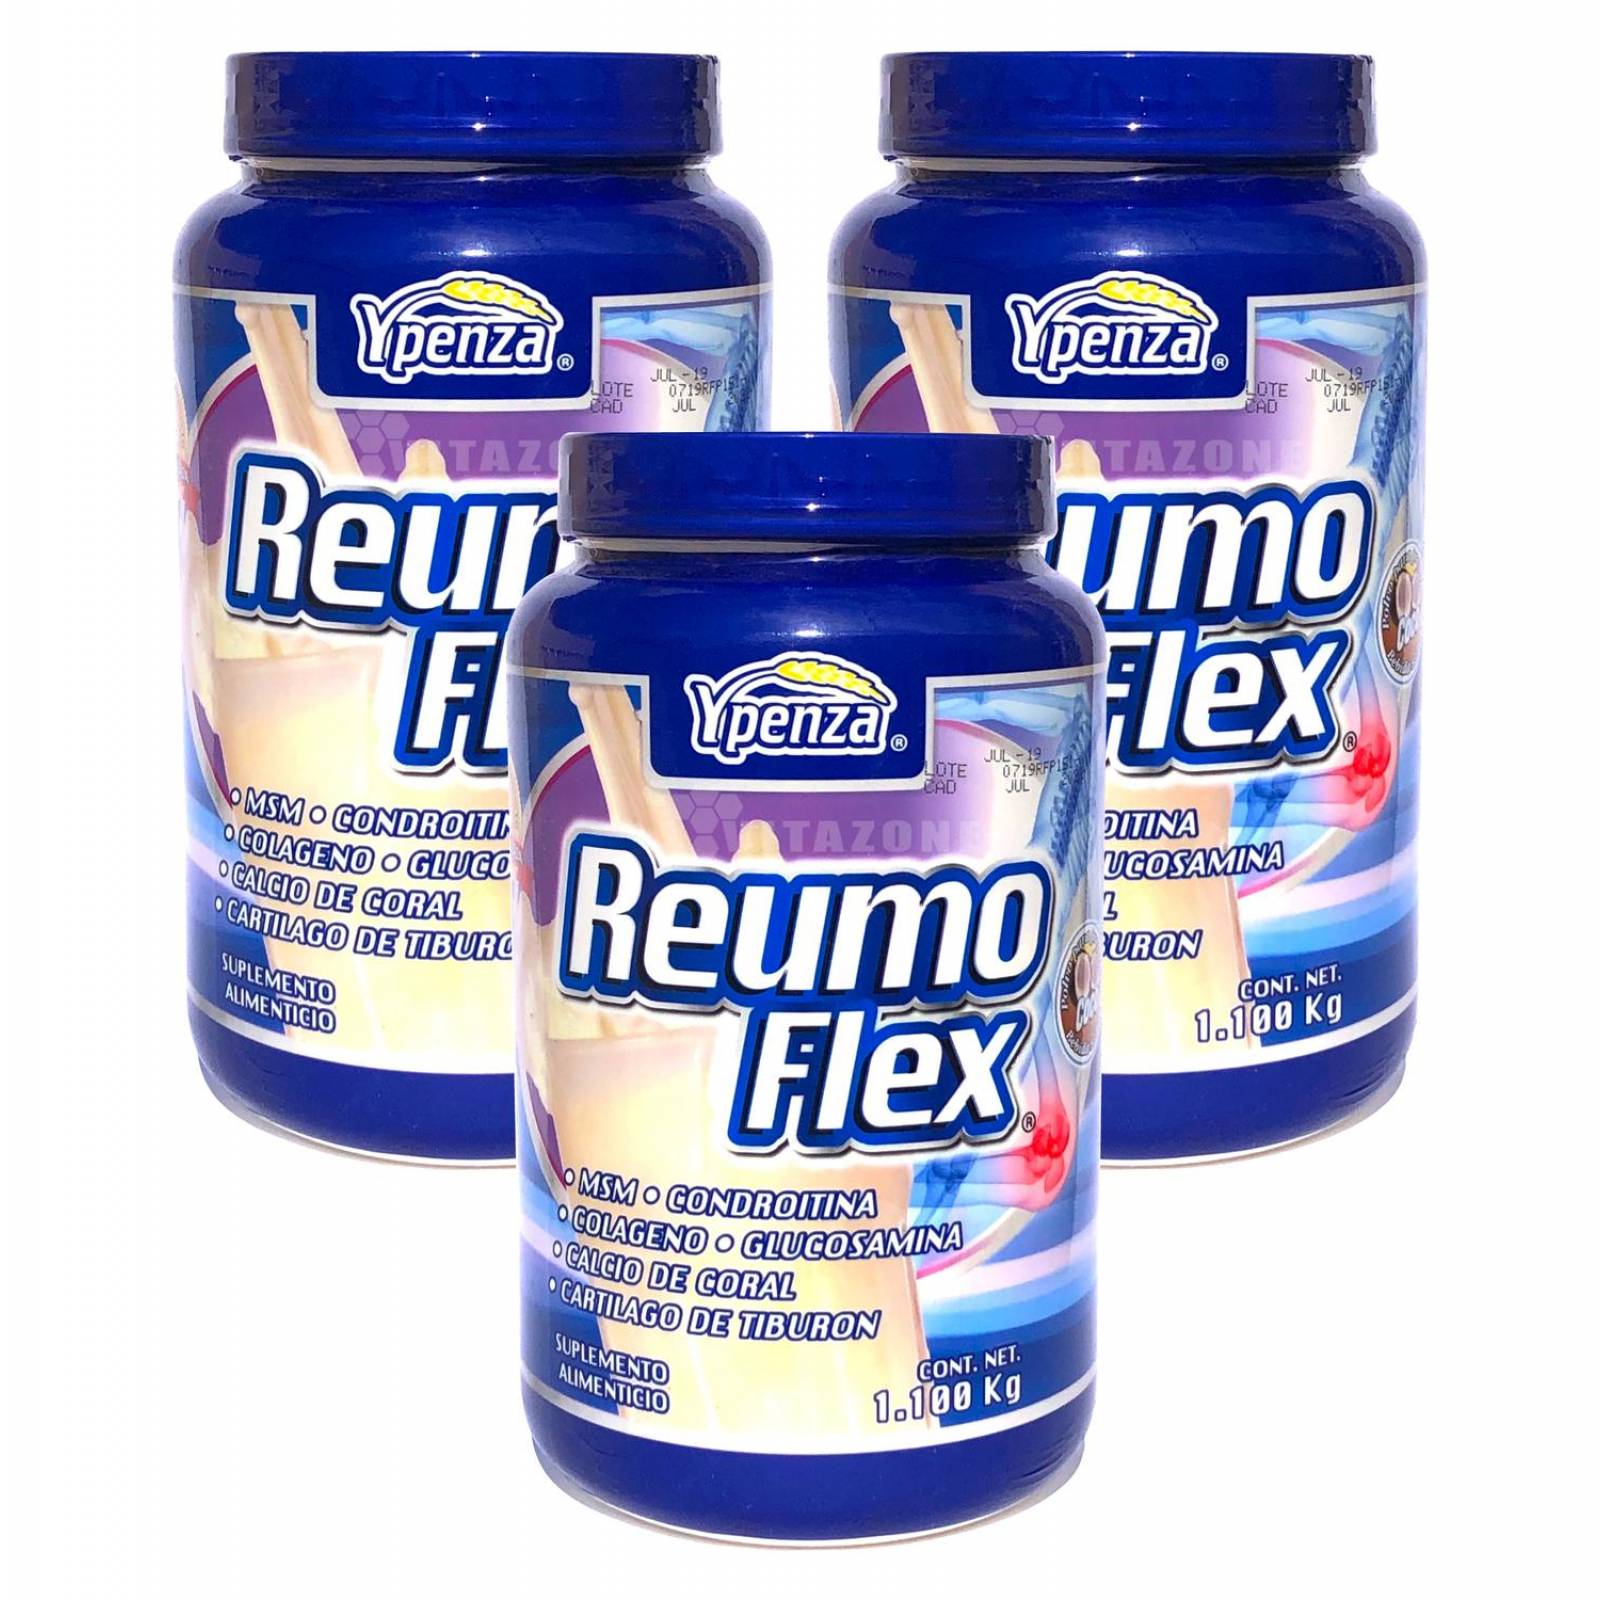 Reumoflex Sabor Coco 1.1 Kg Ypenza. (3 Botes) 